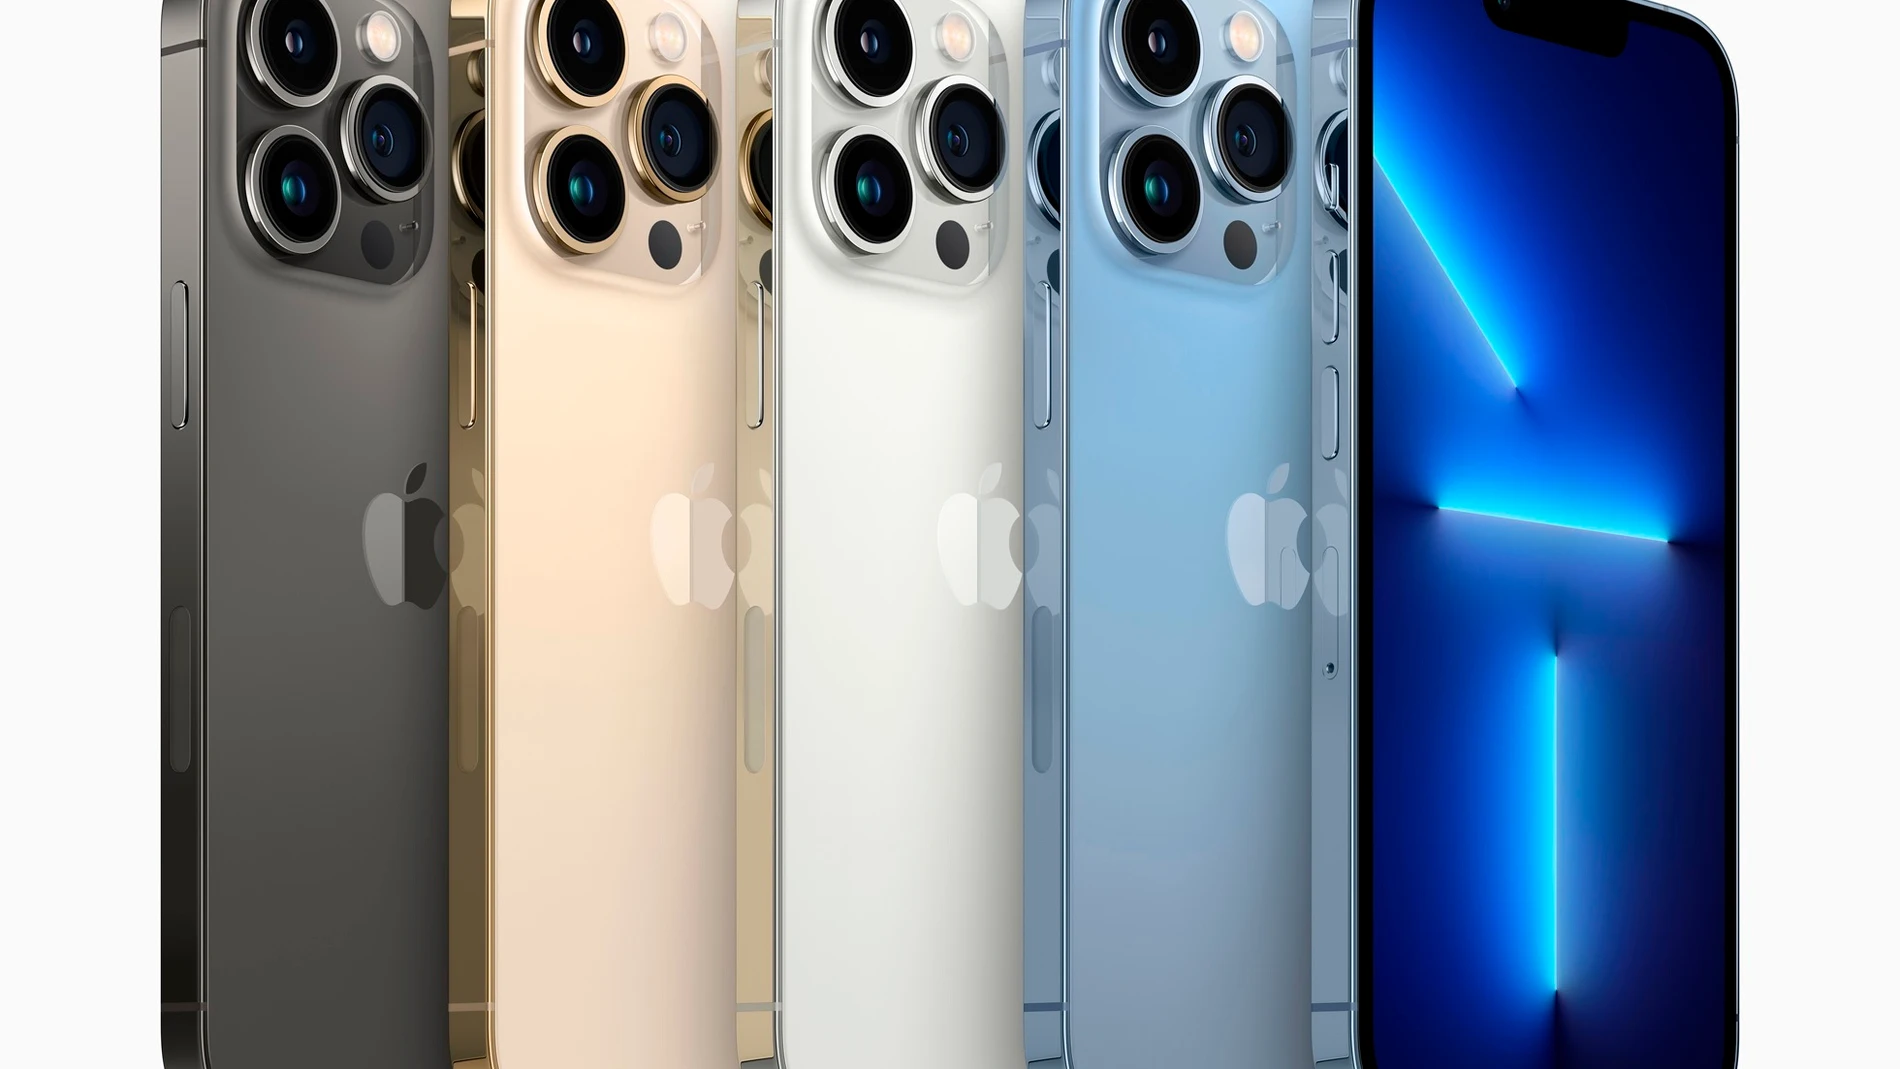 Imagen del nuevo teléfono de Apple, iPhone 13 Pro y iPhone 13 Pro Max